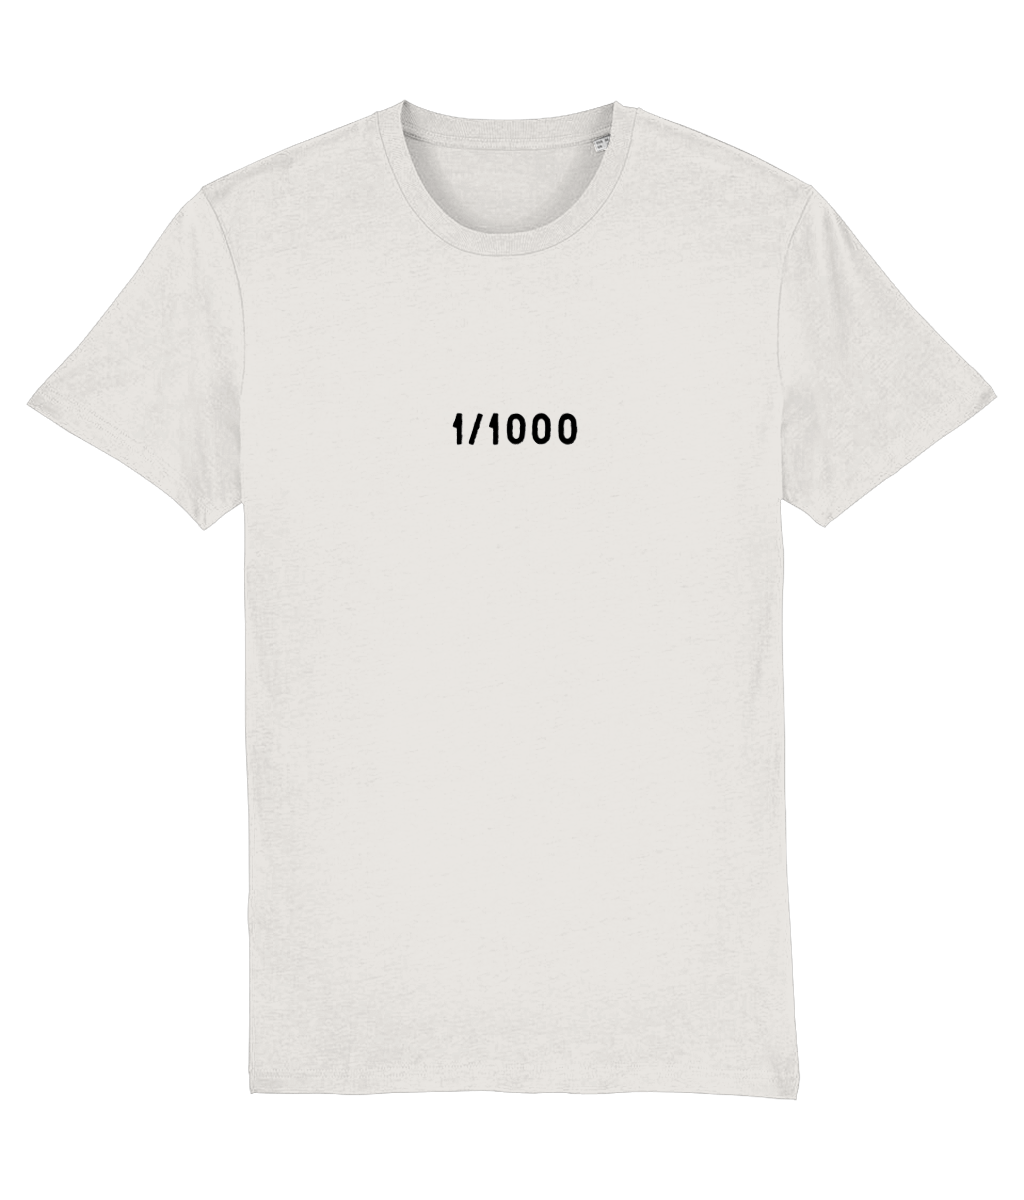 1/1000 t-shirt